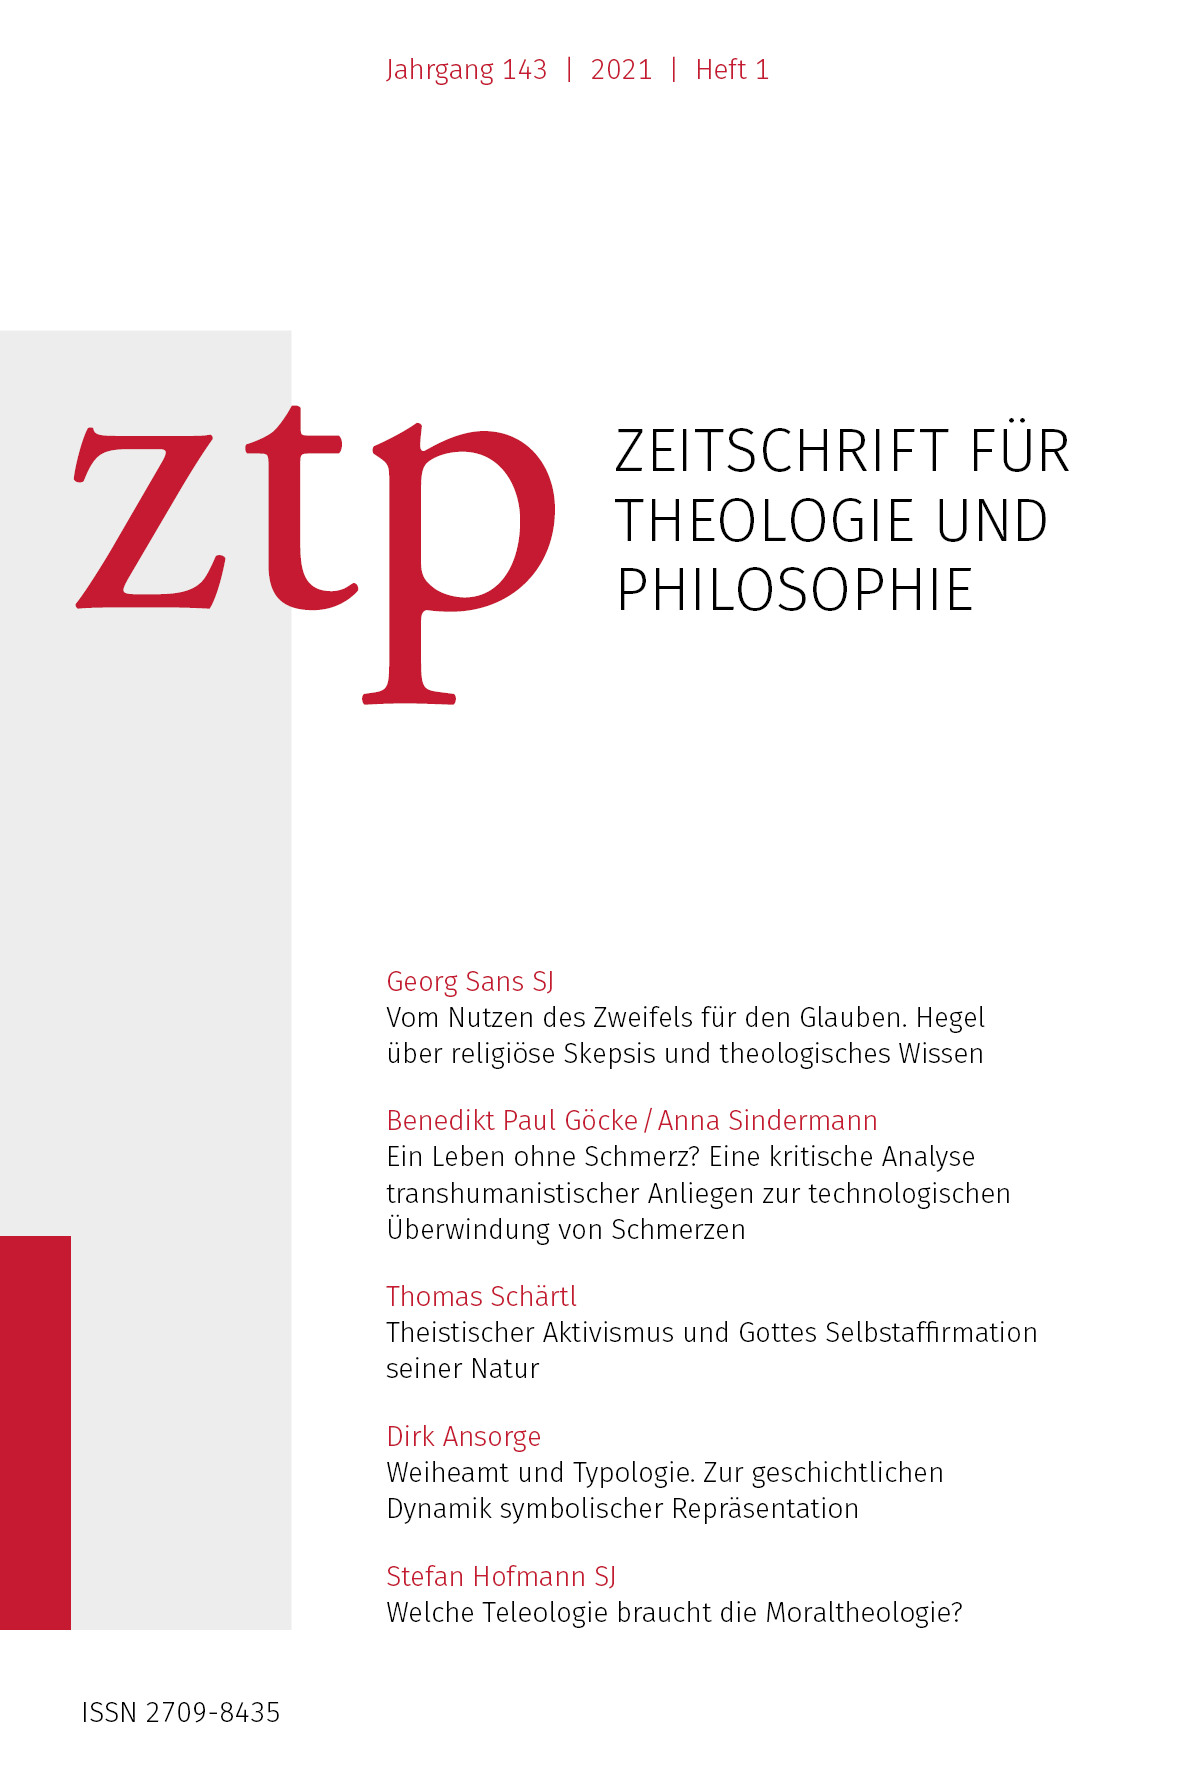 Titelbild der Zeitschrift für Theologie und Philosophie